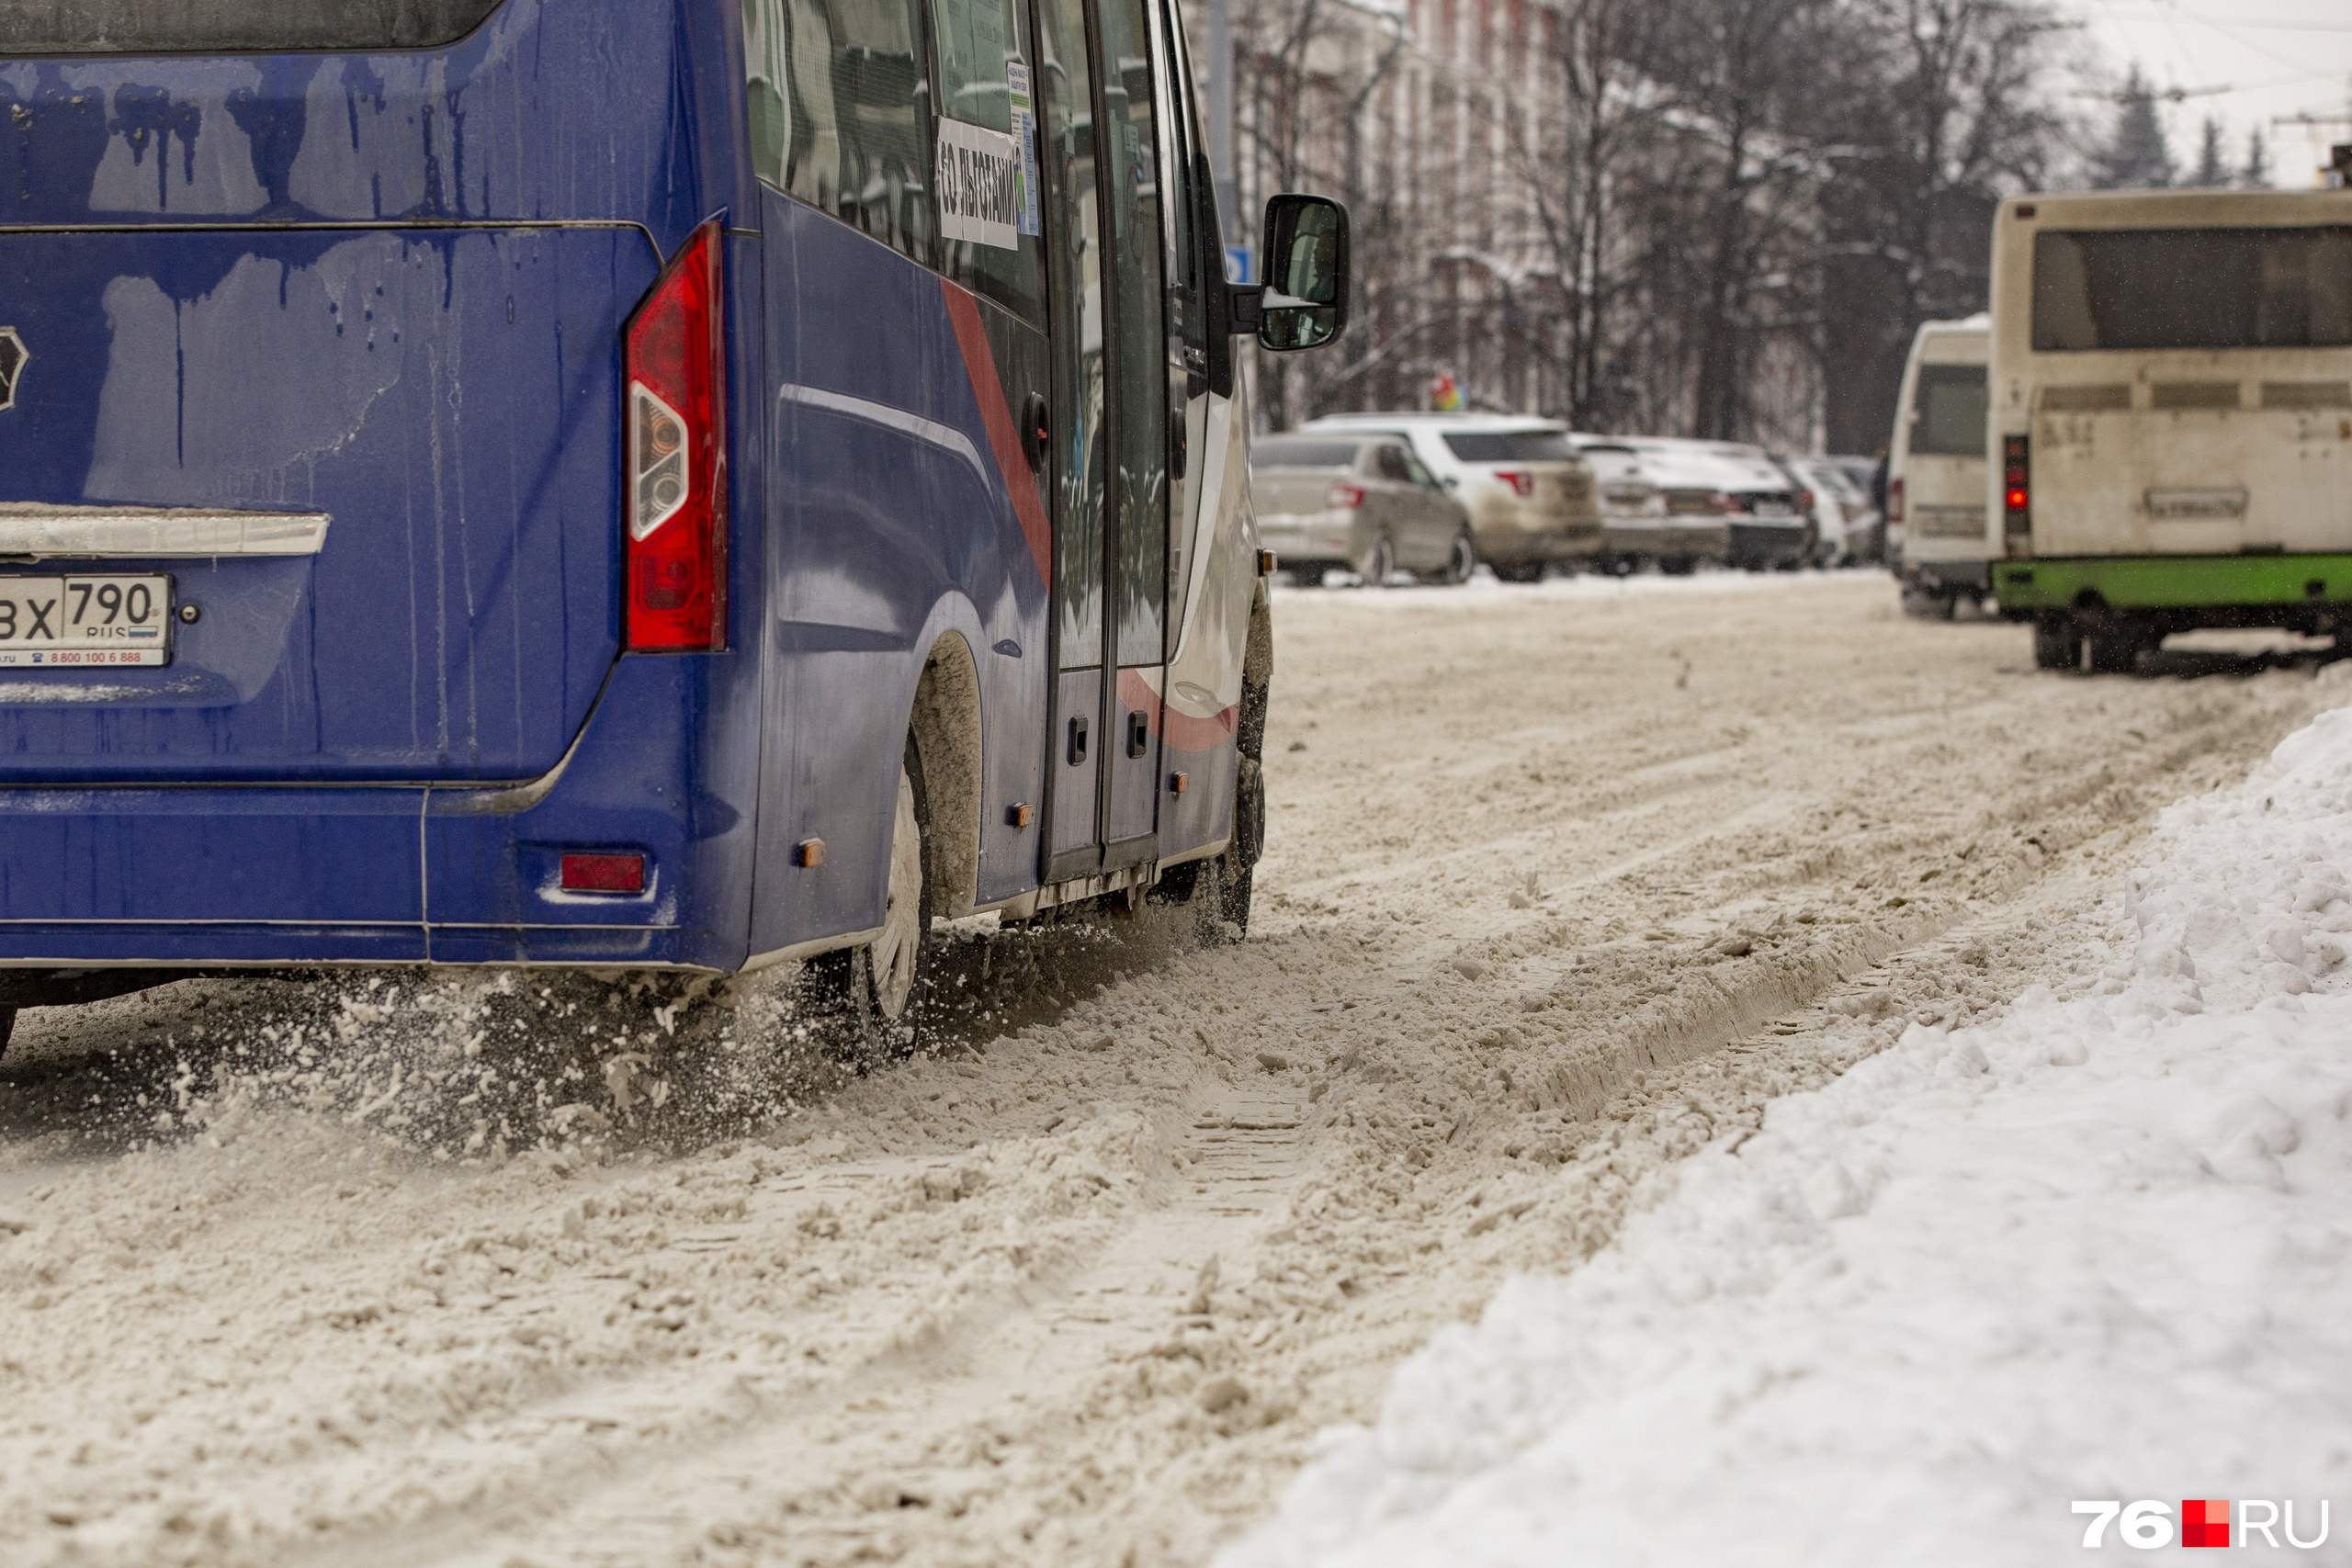 Водители автобусов уже несколько недель жалуются из-за плохо чищенных дорог на невыносимые условия работы